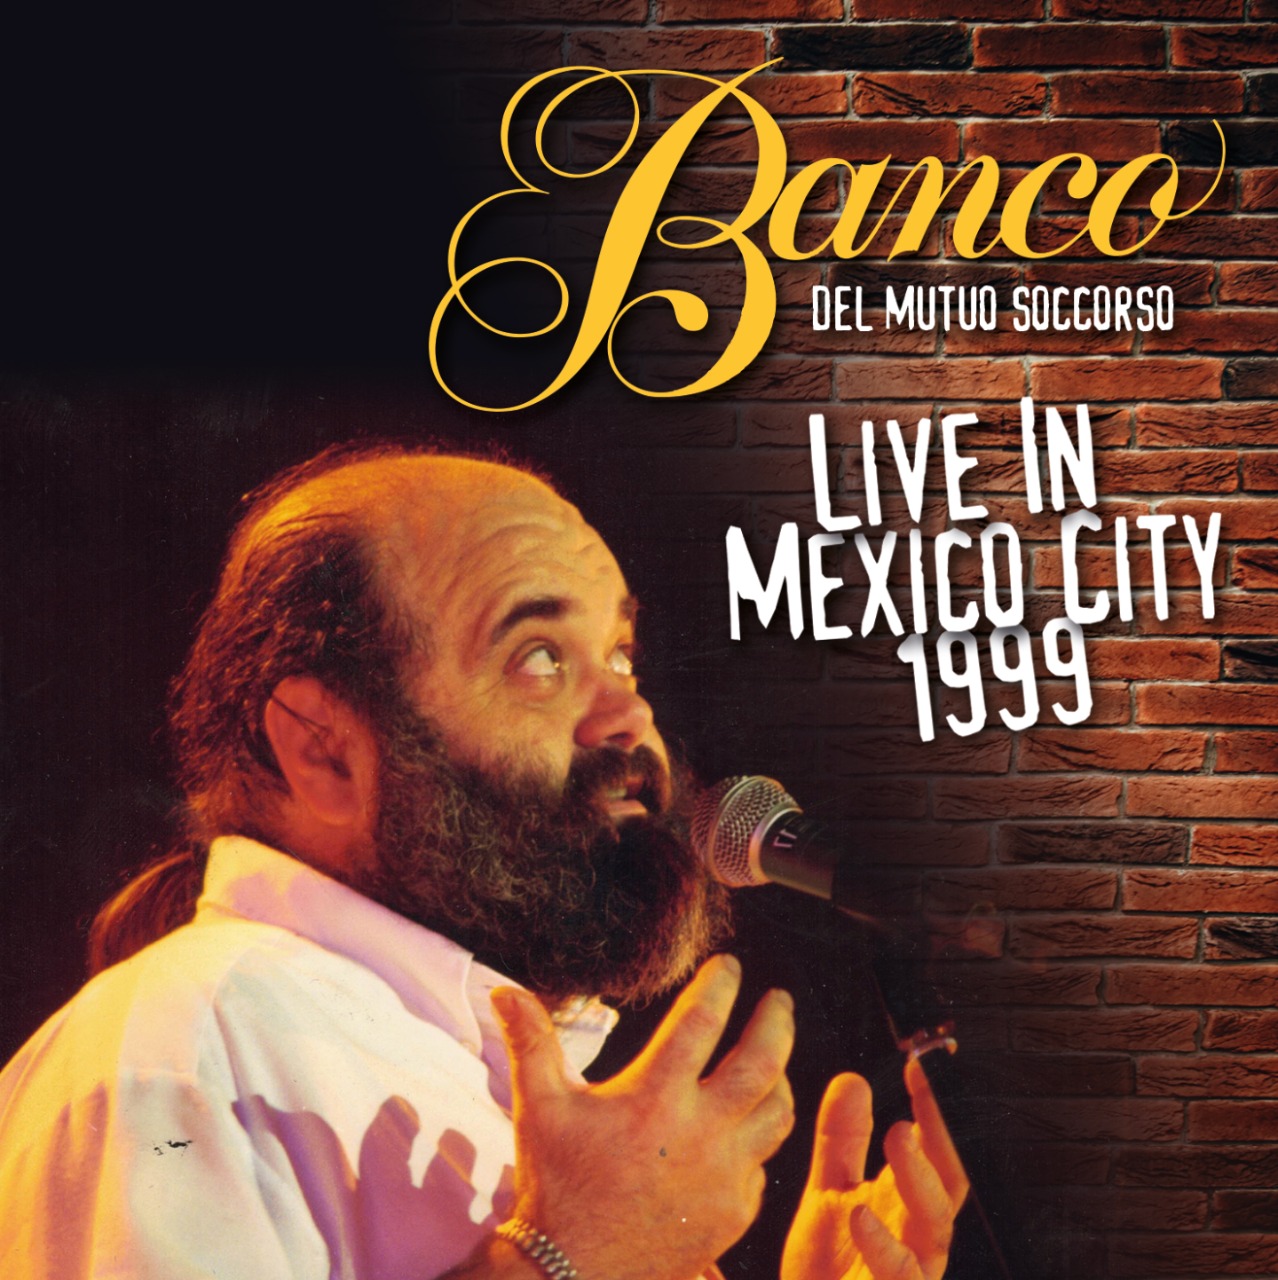 BANCO DEL MUTUO SOCCORSO - Live in Mexico City 1999